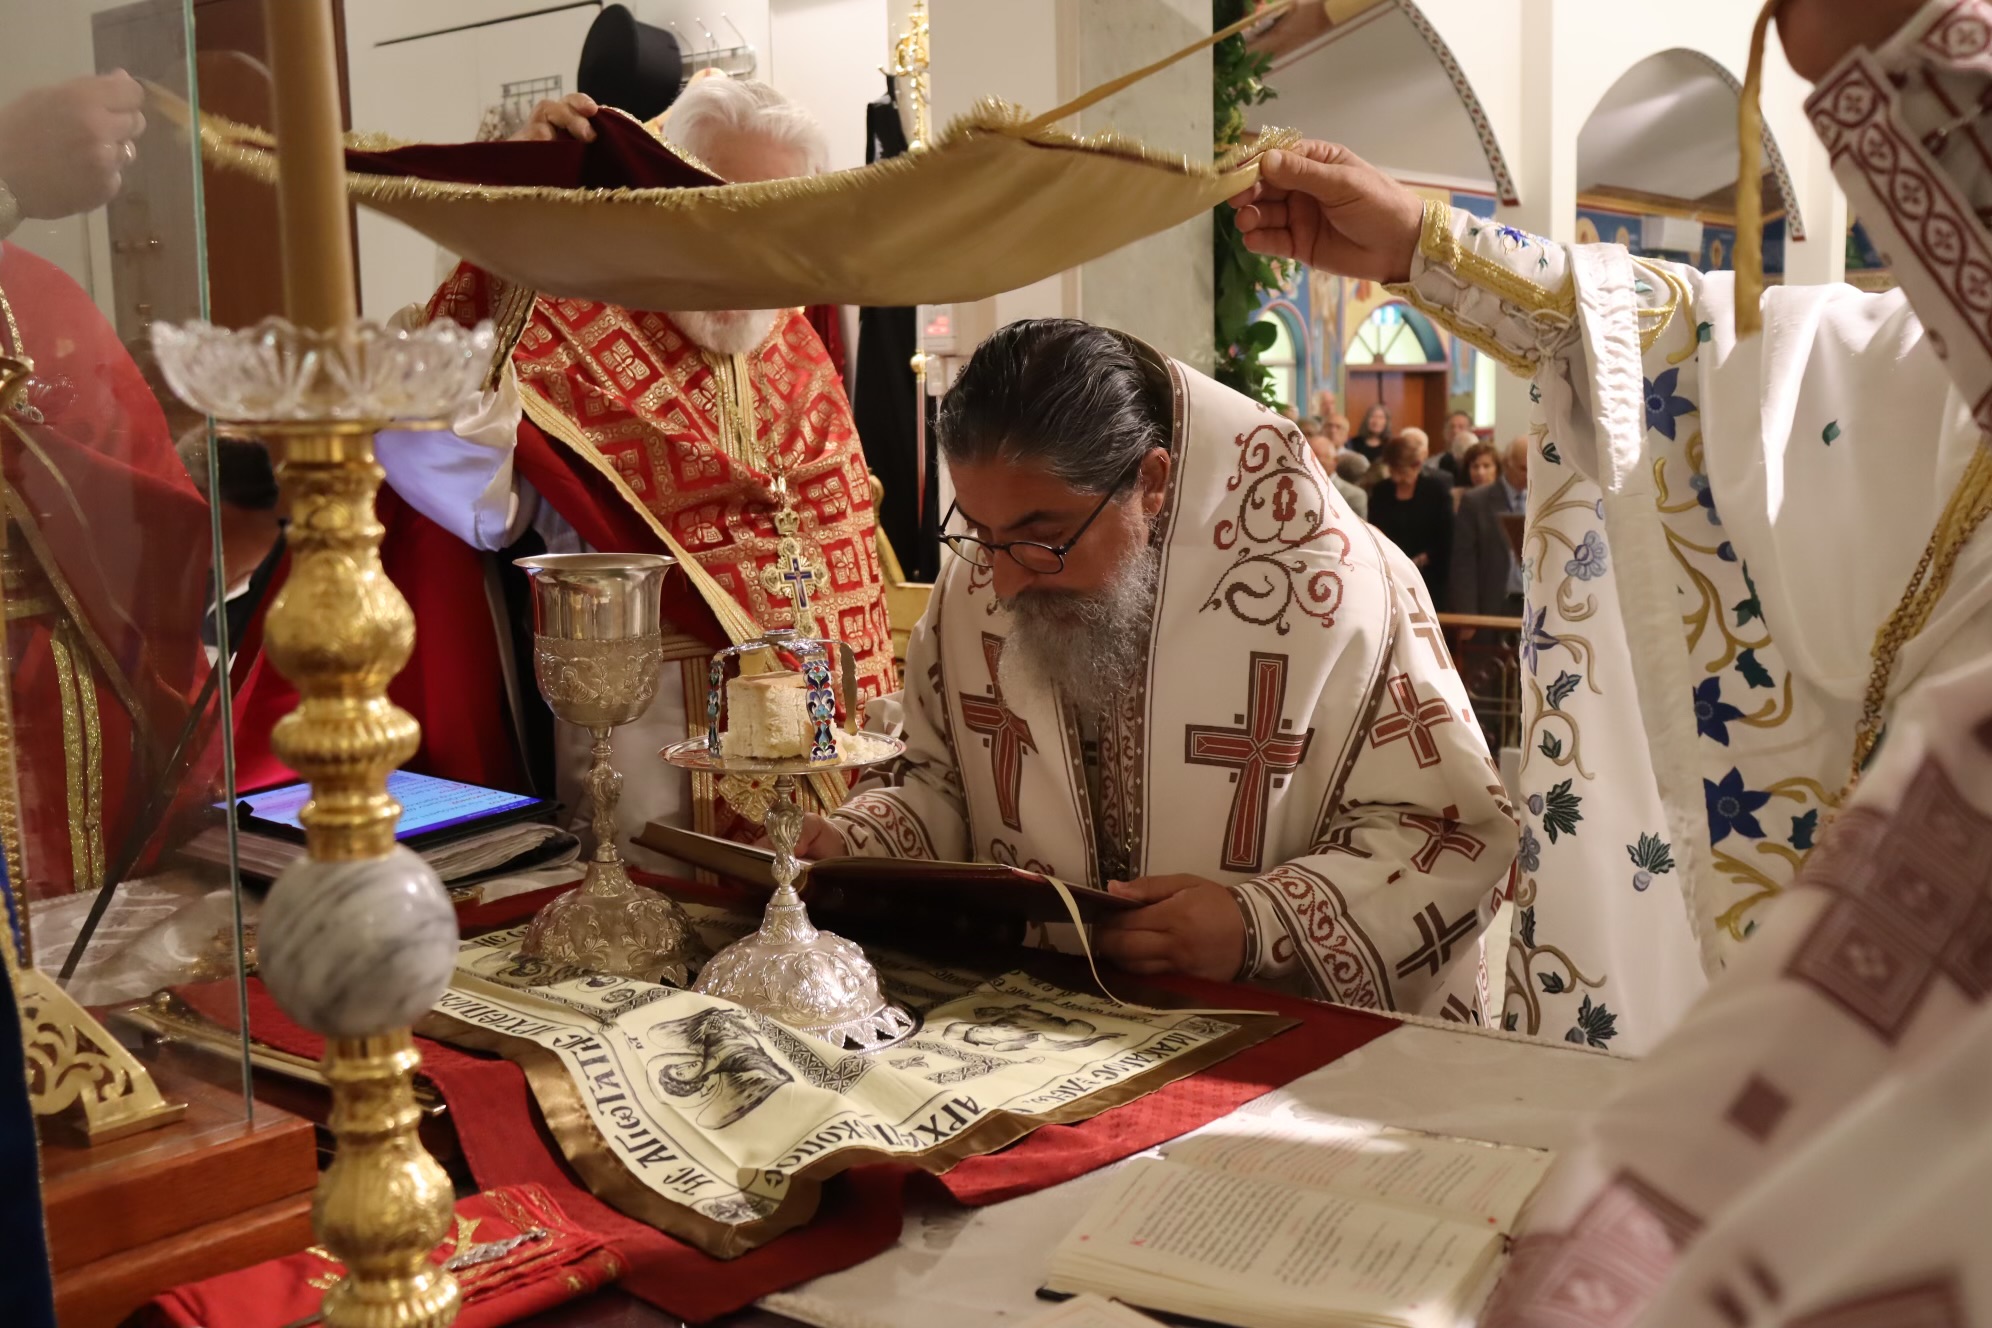 Μελβούρνη: Ο Επίσκοπος Σωζοπόλεως στον εορτάζοντα Ι.Ν. Αγίου Χαραλάμπους Templestowe